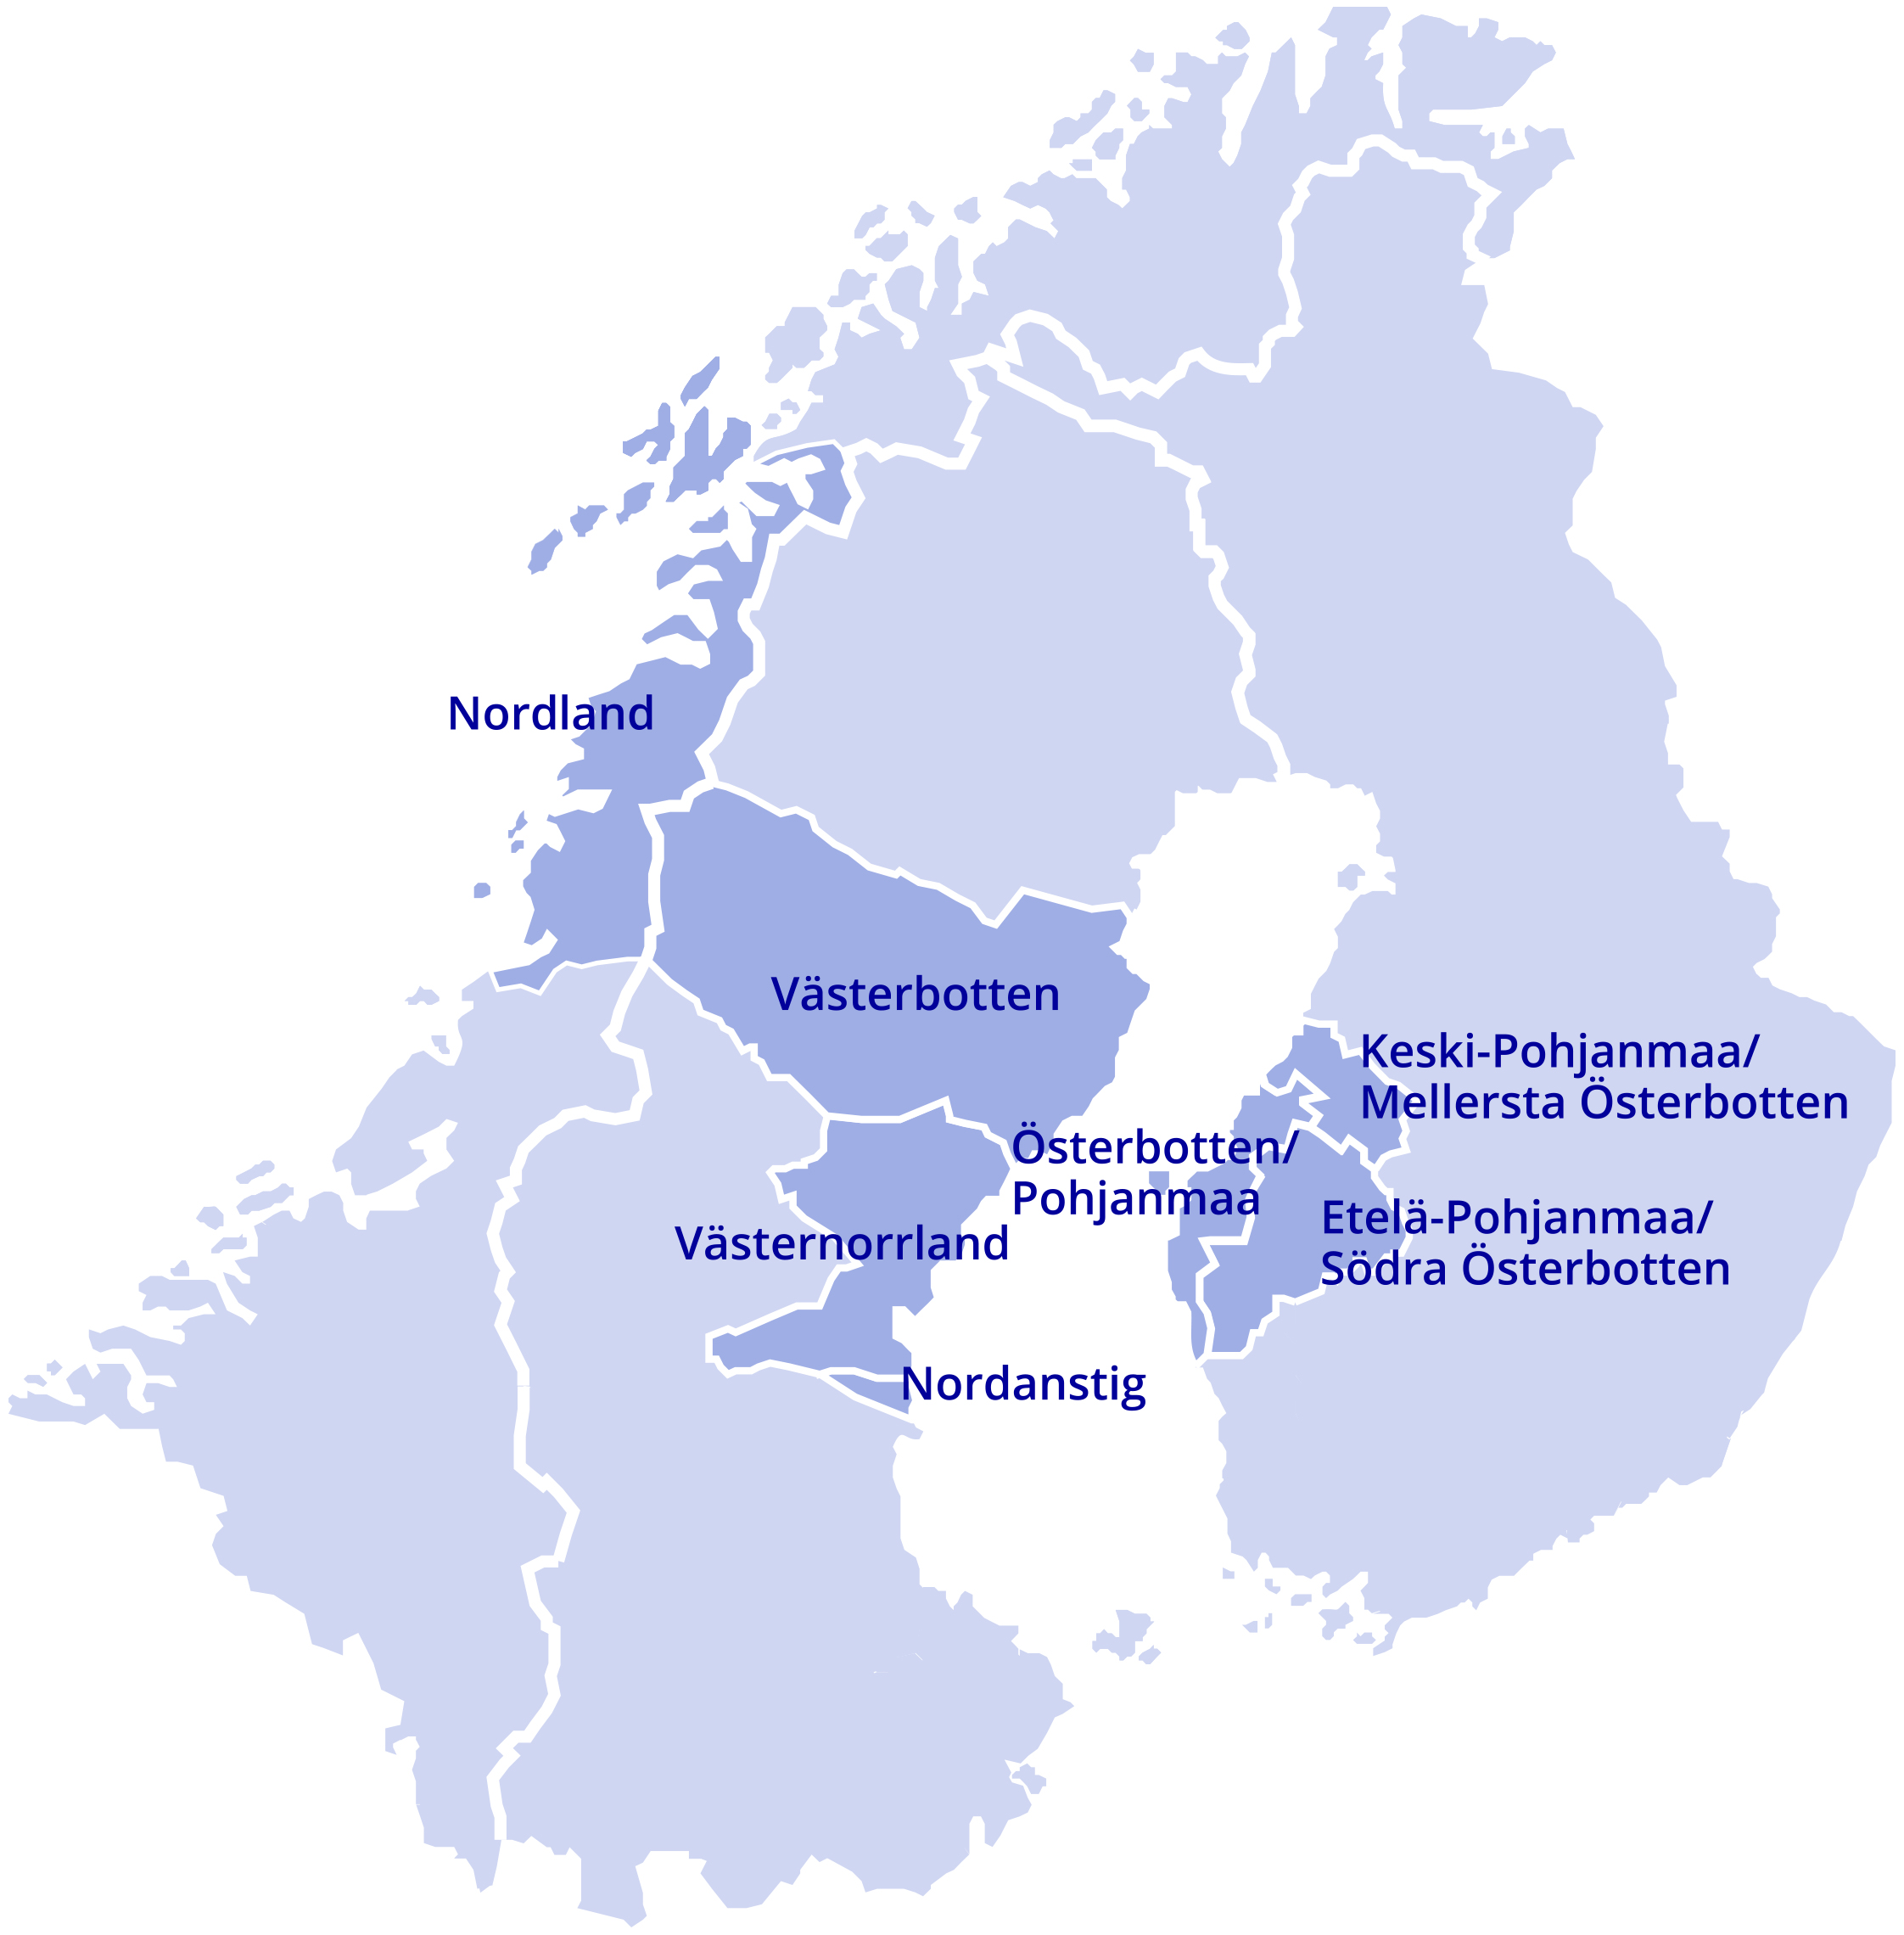 Botnia-Atlantica 2014-2020 Norja: Ruotsi: Suomi: Nordland Västerbotten